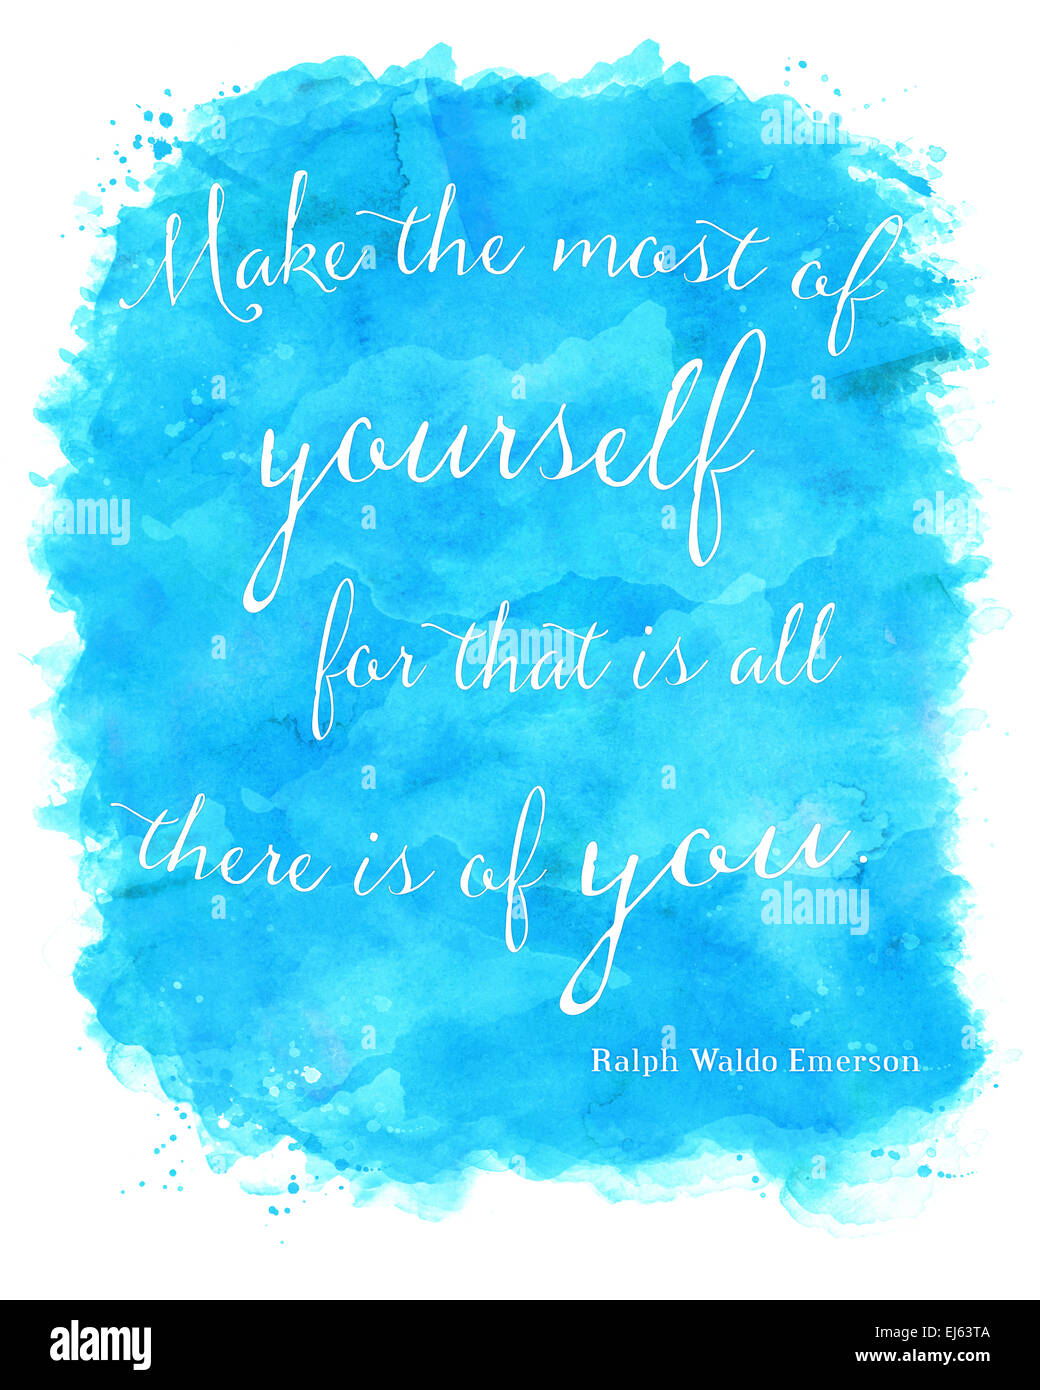 Ralph Waldo Emerson tirer le meilleur de vous-même l'AQUARELLE | Art mural Citation de motivation des citations inspirantes à Sarcelles, Bleu, Purpl Banque D'Images